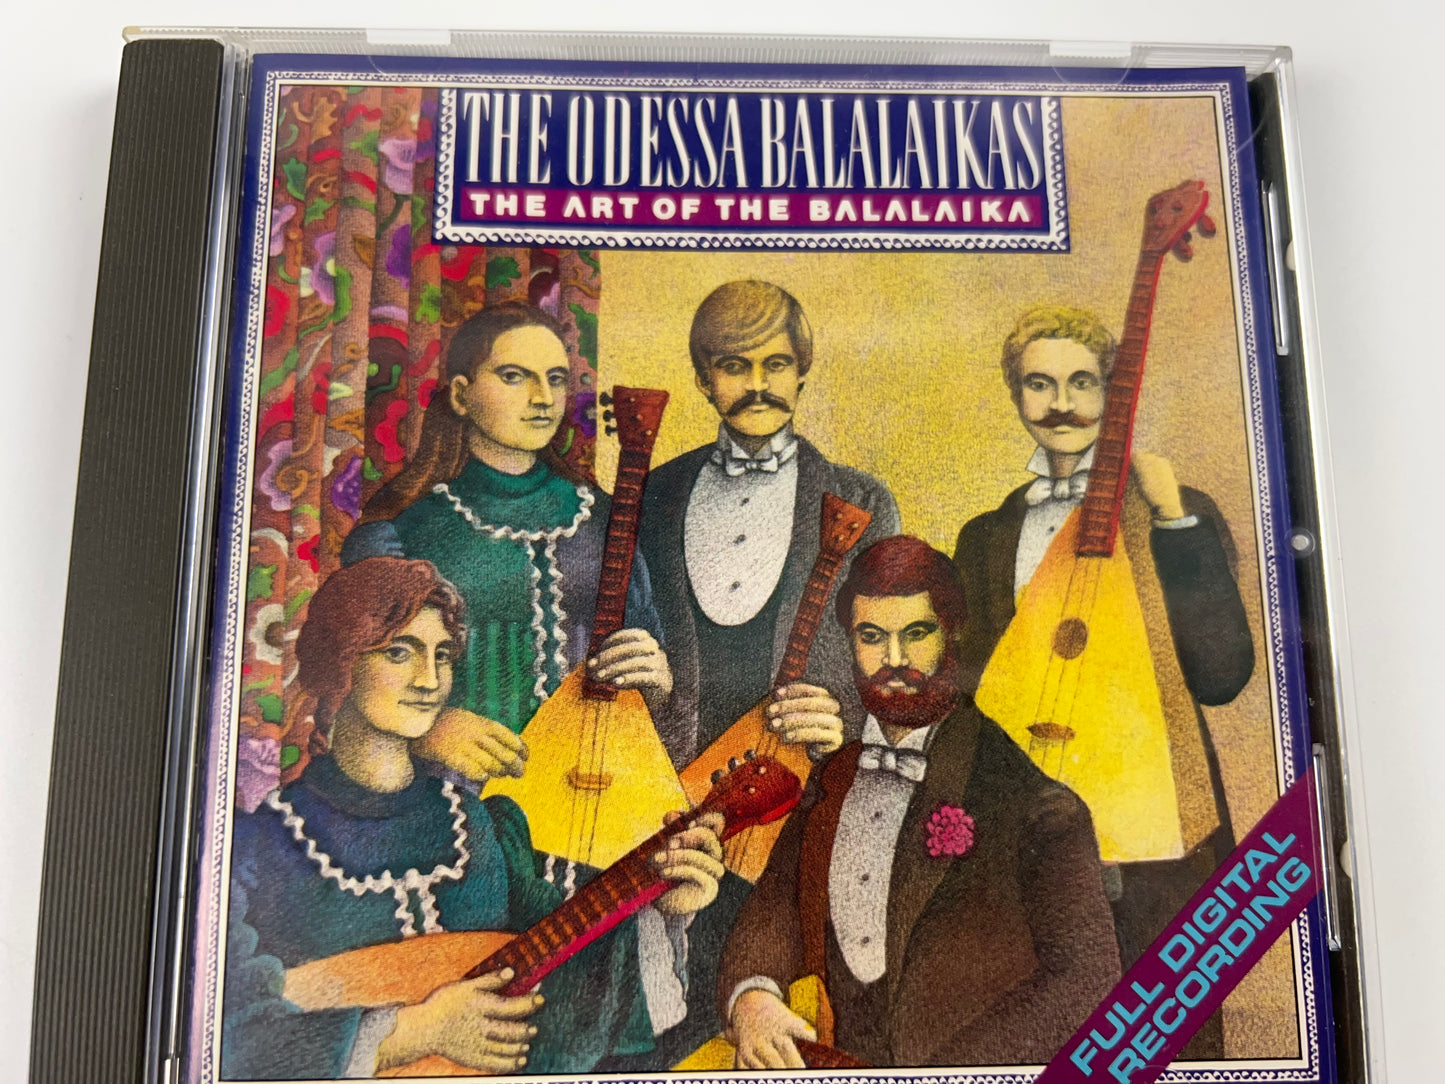 The Art Of The Balalaika by The Odessa Balalaikas (CD, May-82, 1 Disc, Nonesuch)